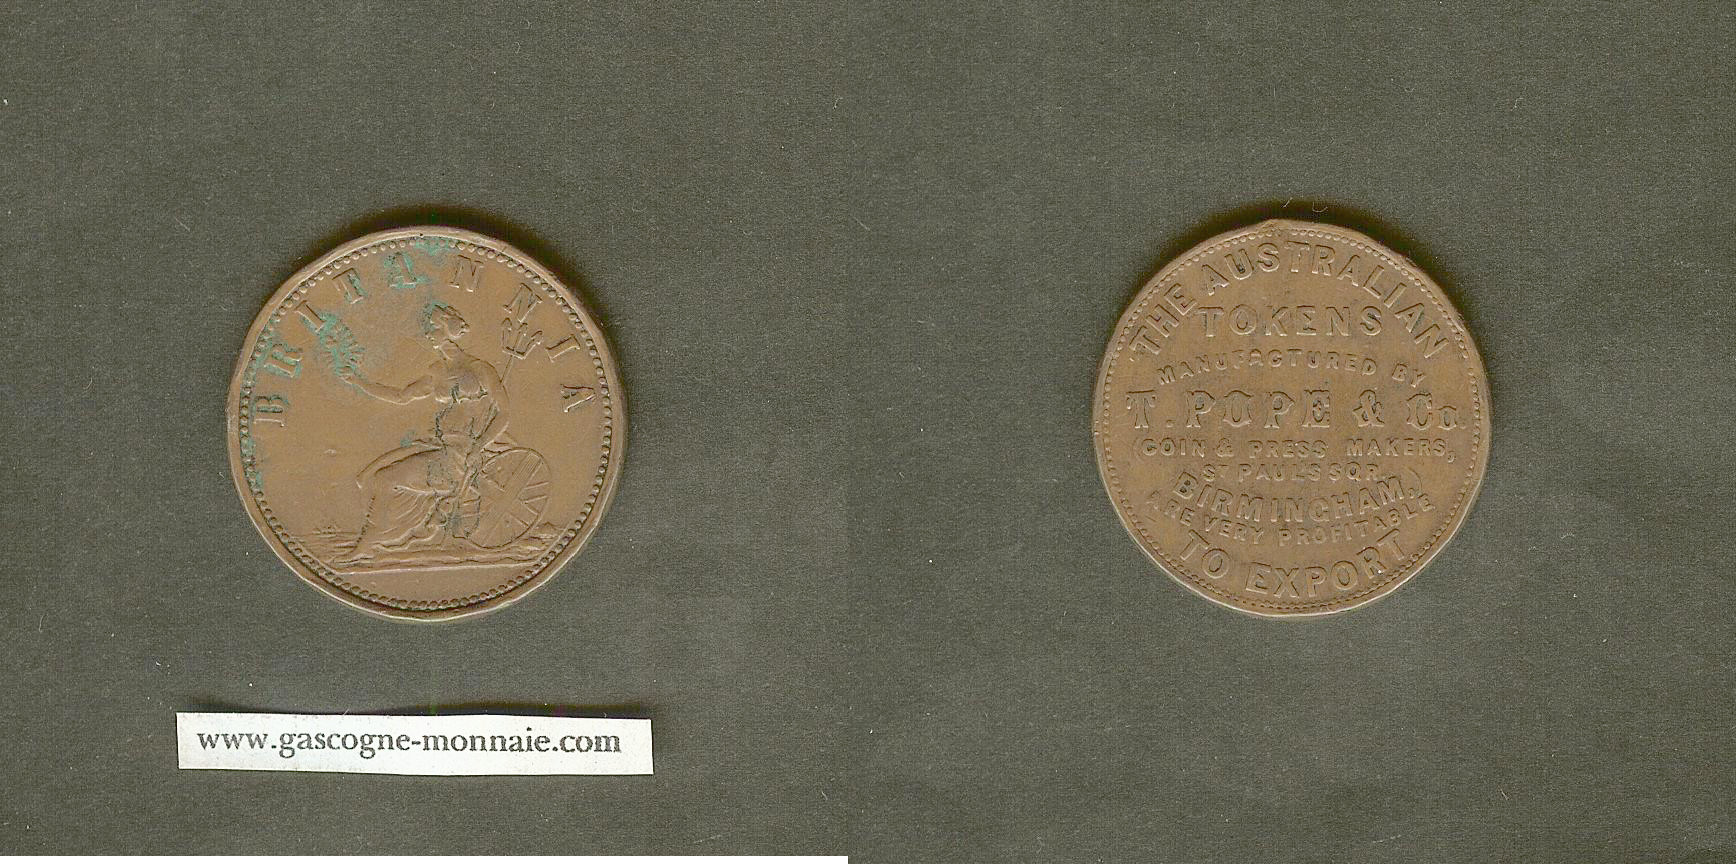 Australia penny Token - Pope, T & Co. circa 1855 VF+